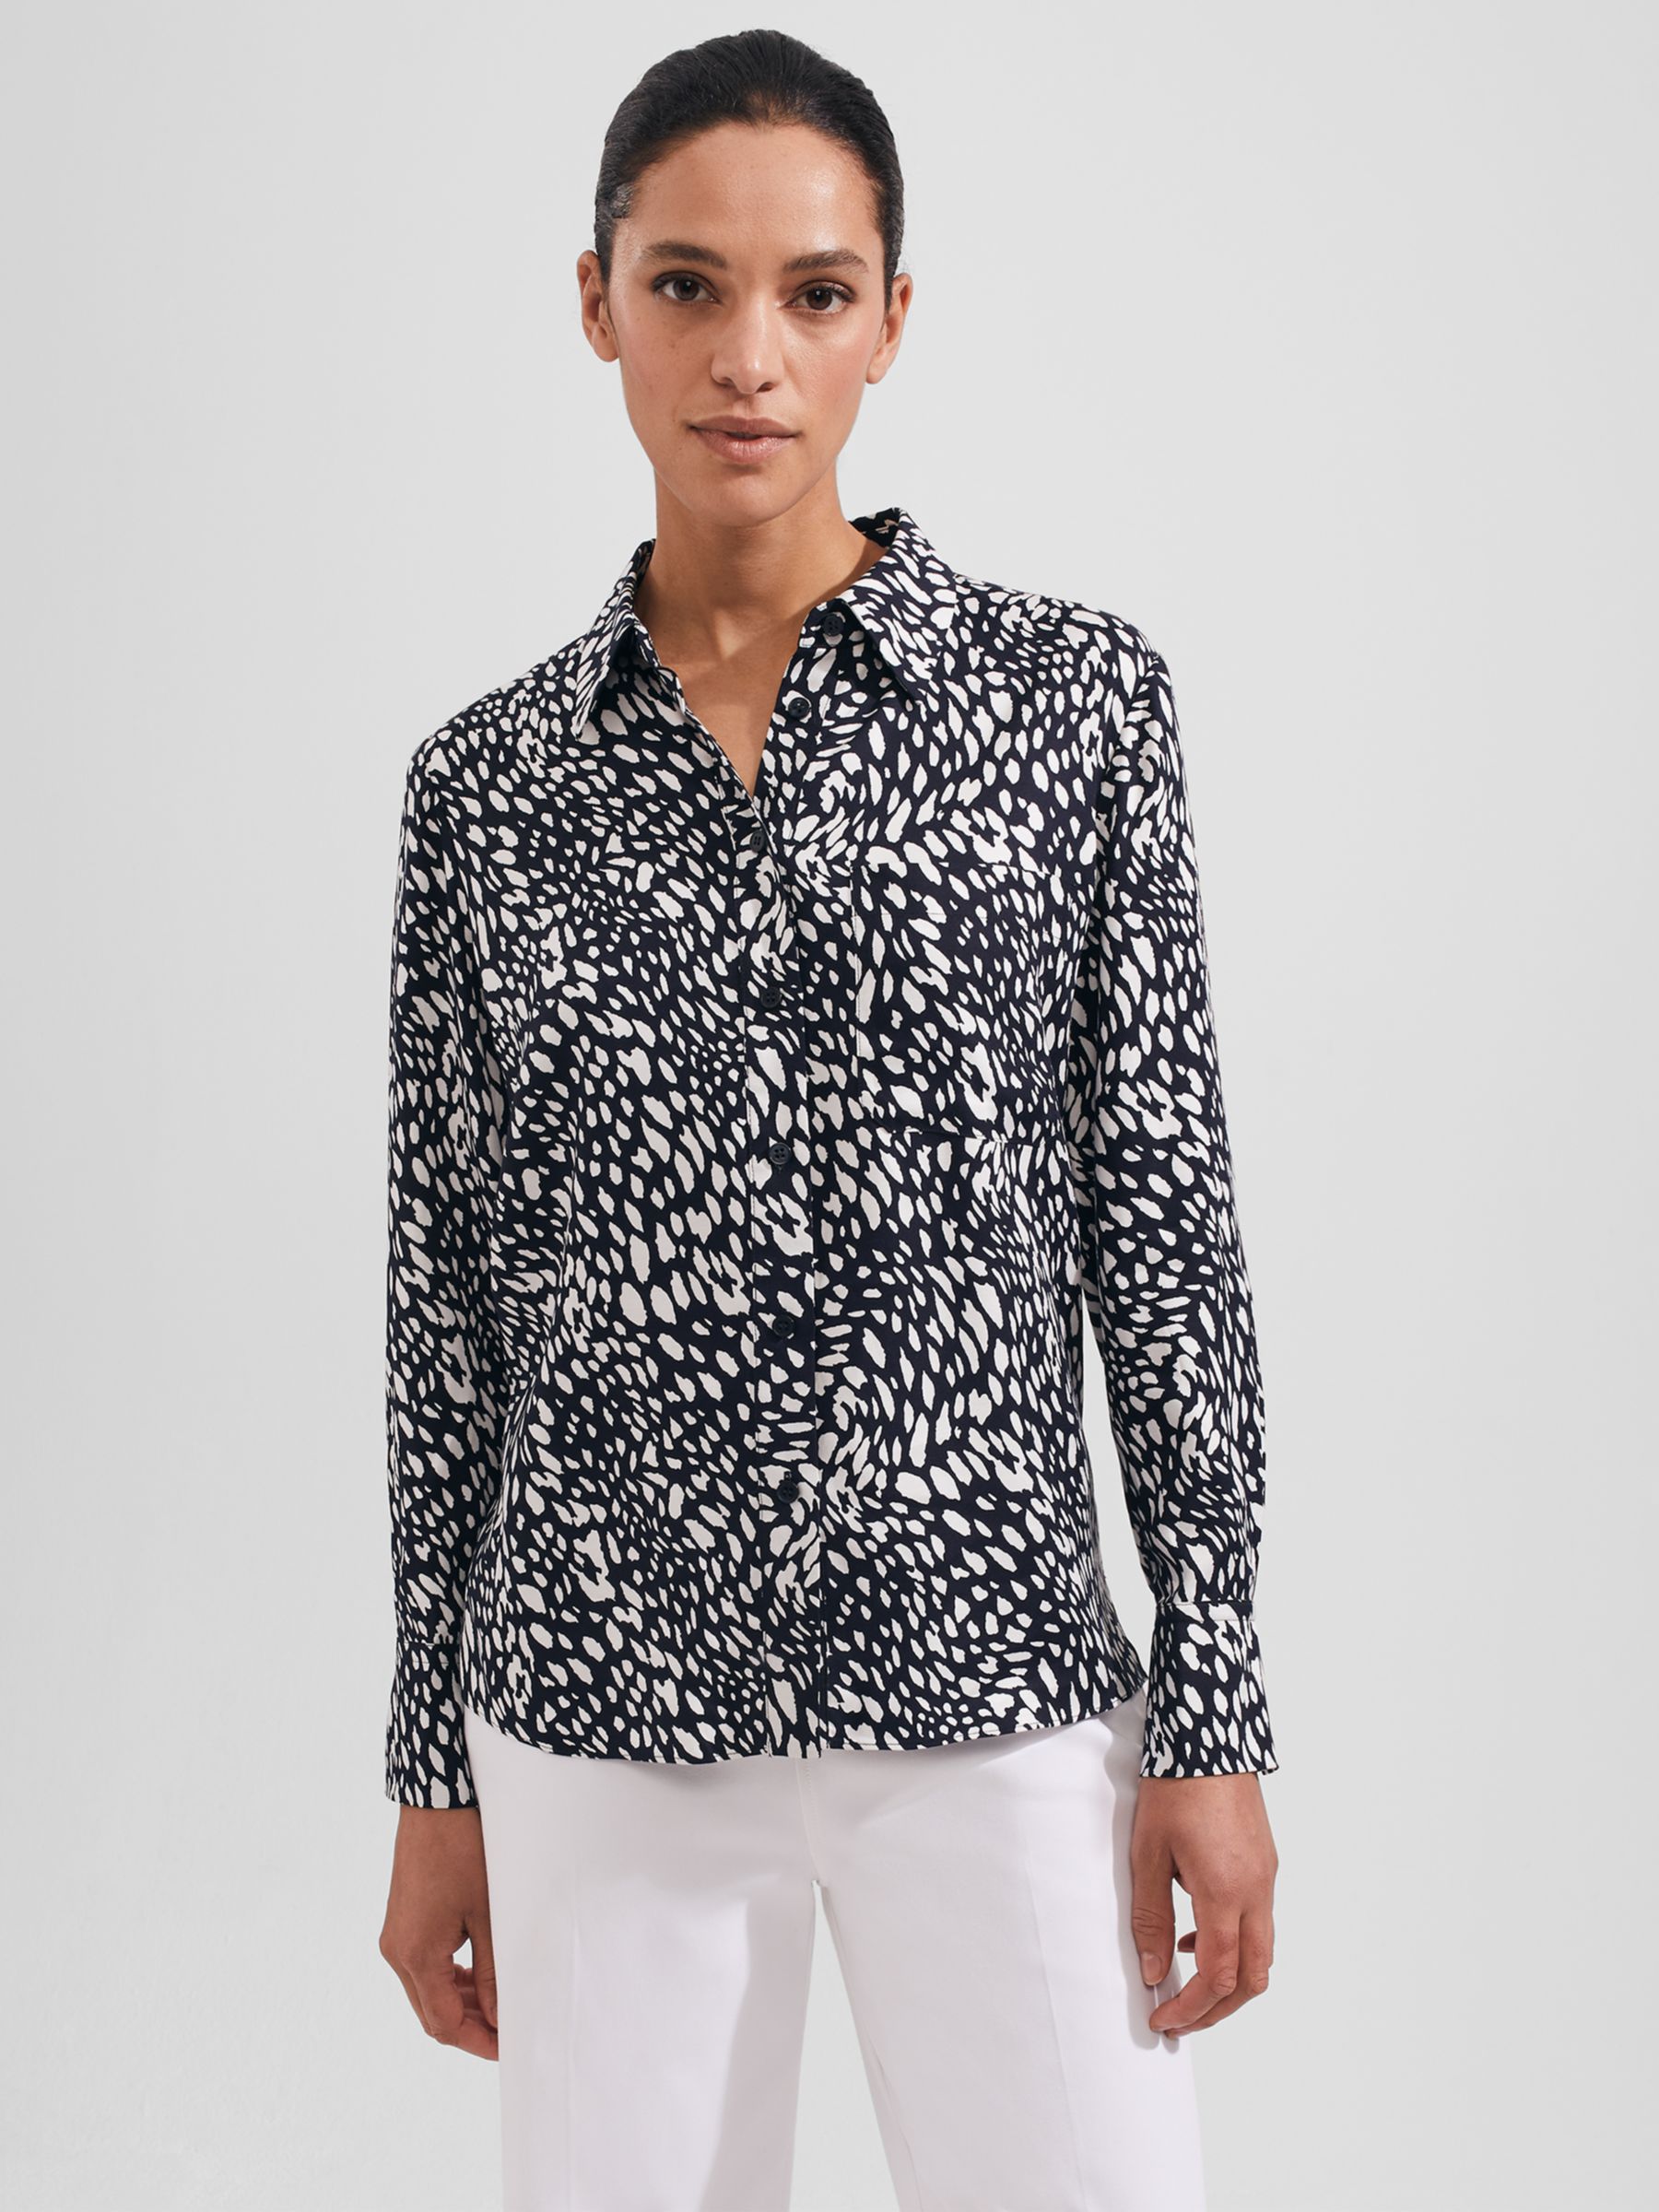 Hobbs Katia Shirt, Navy/Ivory at John Lewis & Partners